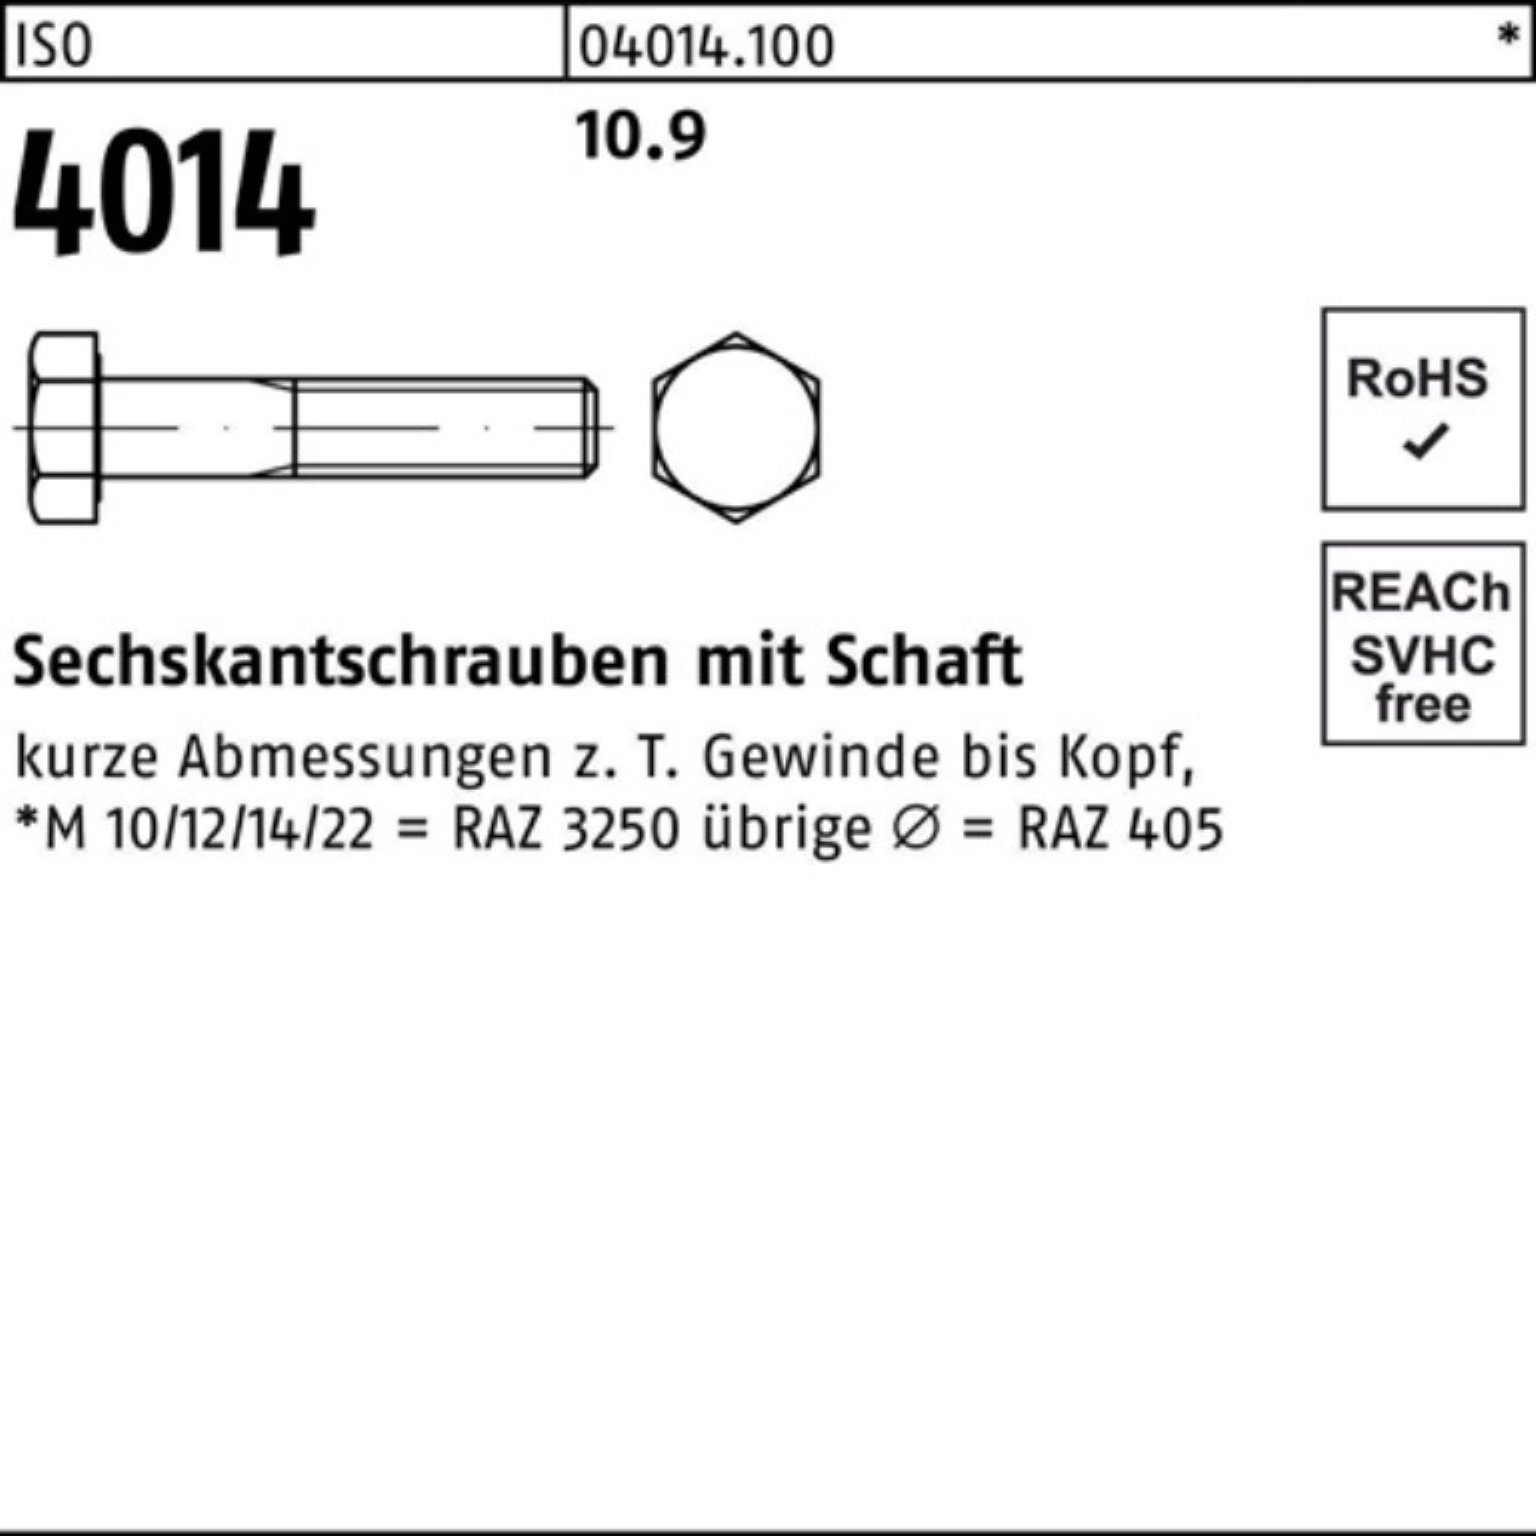 ISO IS Sechskantschraube 1 100er Sechskantschraube Stück 10.9 290 Pack Bufab Schaft M30x 4014